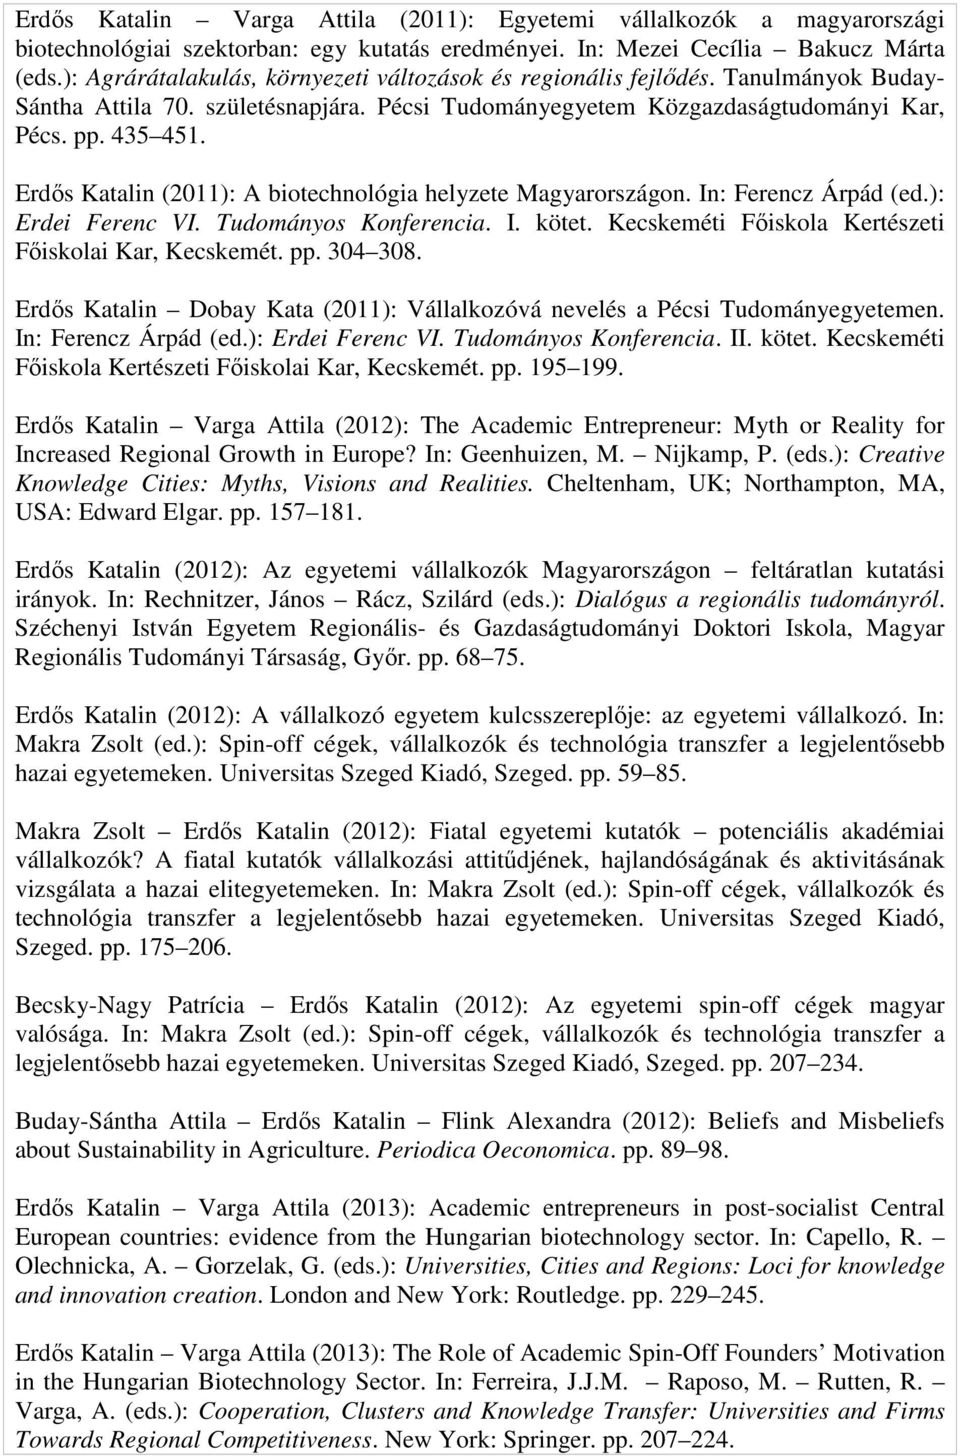 Erdős Katalin (2011): A biotechnológia helyzete Magyarországon. In: Ferencz Árpád (ed.): Erdei Ferenc VI. Tudományos Konferencia. I. kötet. Kecskeméti Főiskola Kertészeti Főiskolai Kar, Kecskemét. pp.